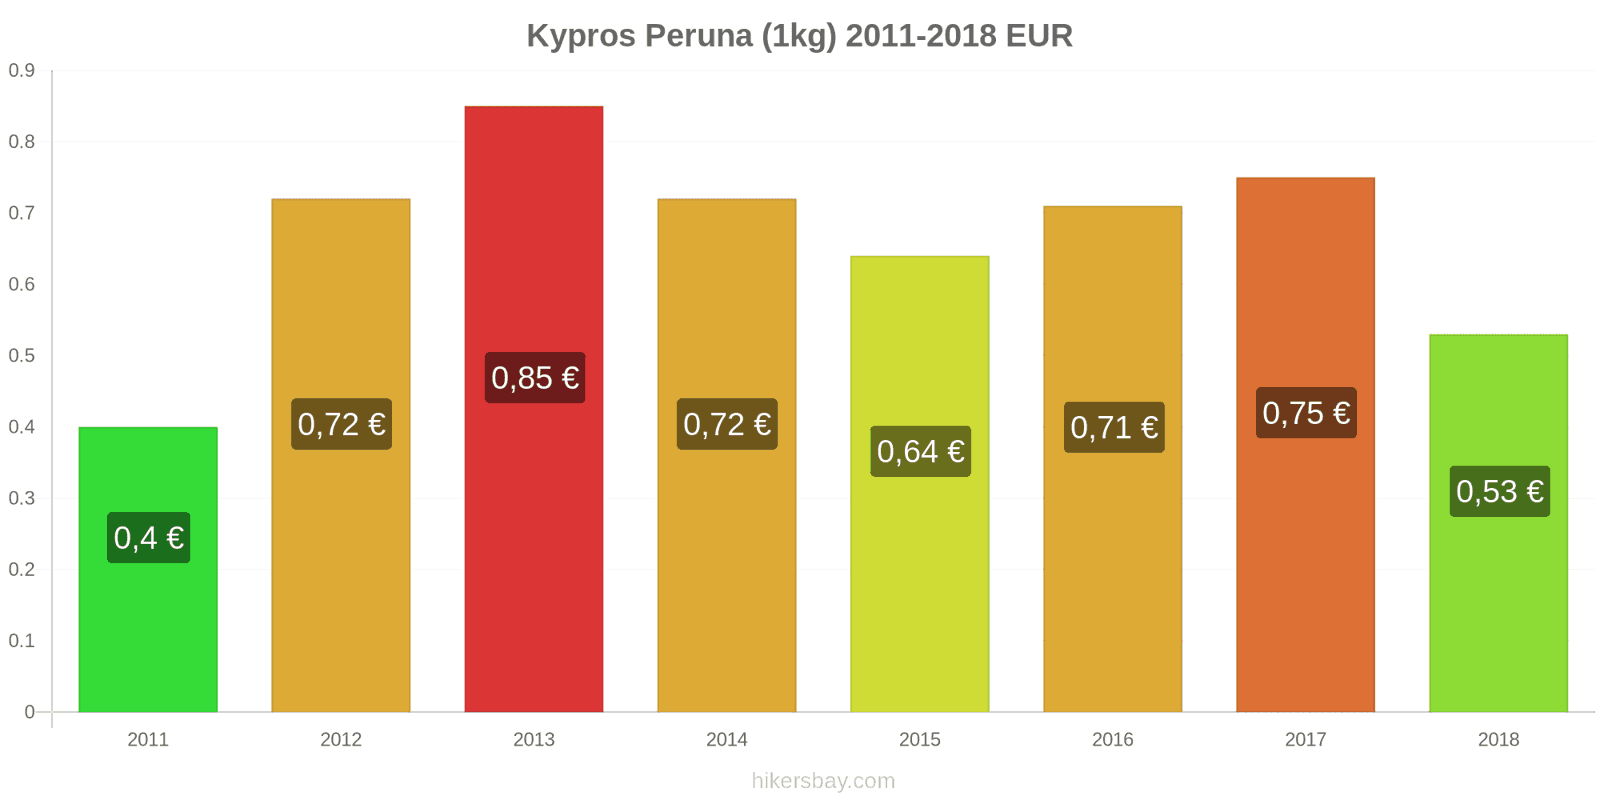 Kypros hintojen muutokset Peruna (1kg) hikersbay.com